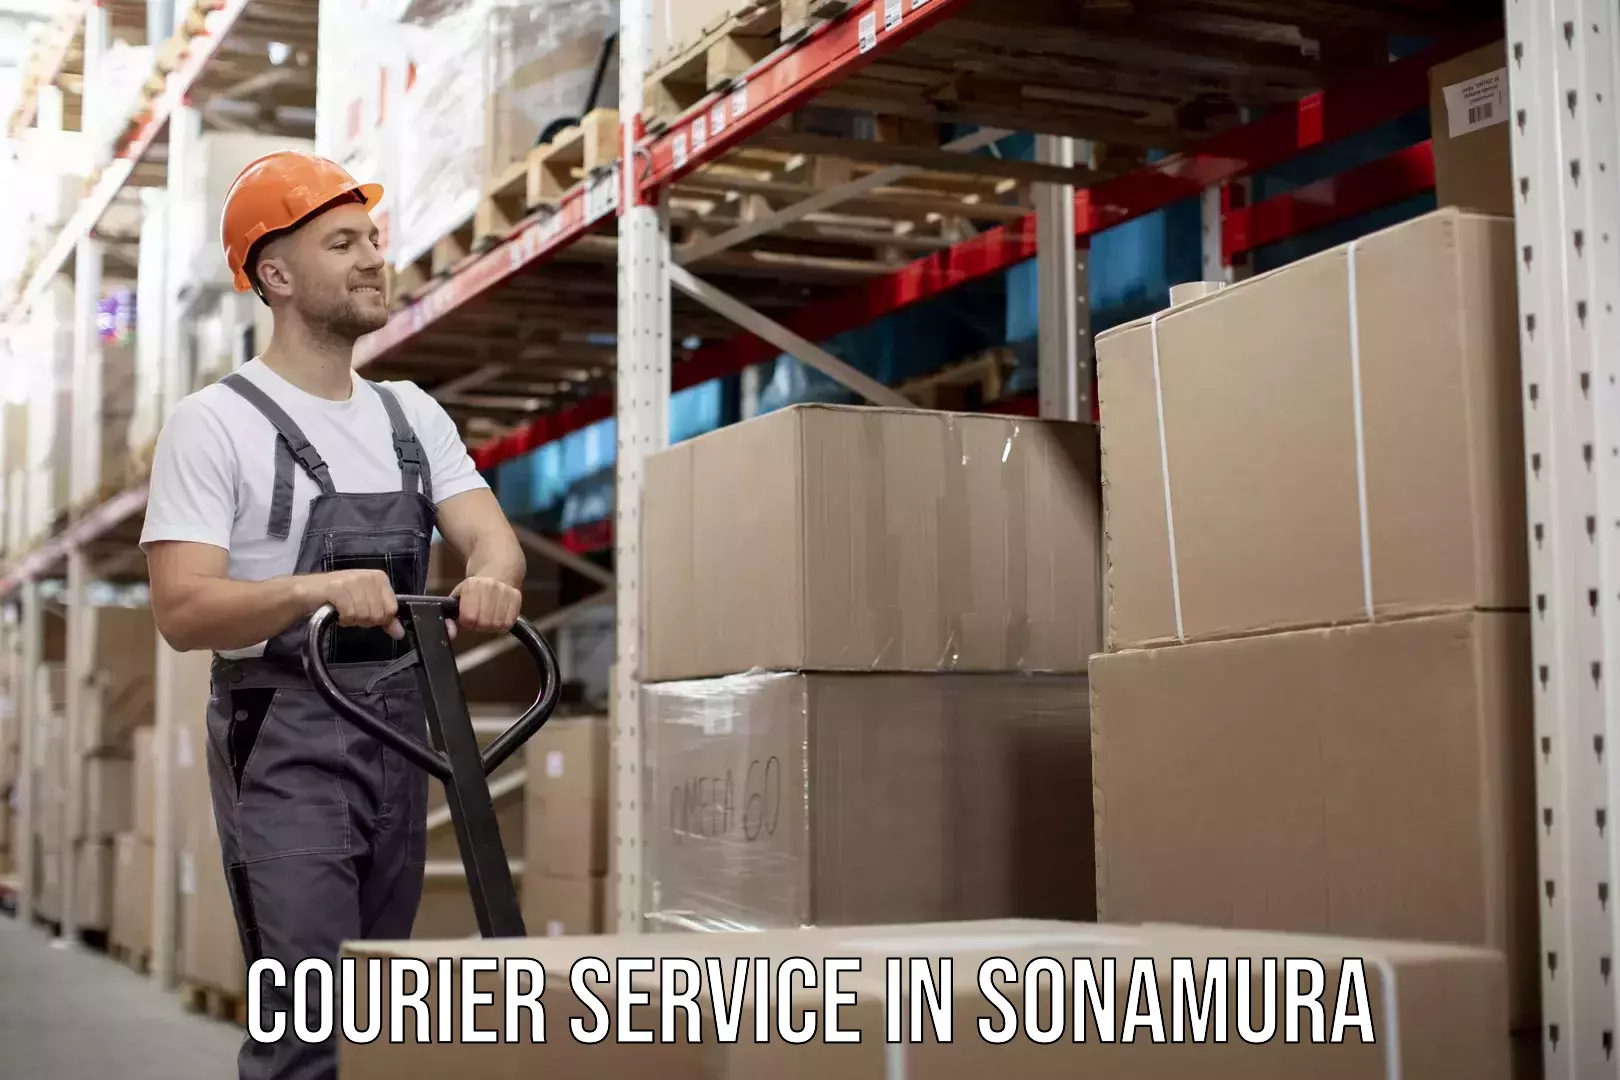 Comprehensive parcel tracking in Sonamura